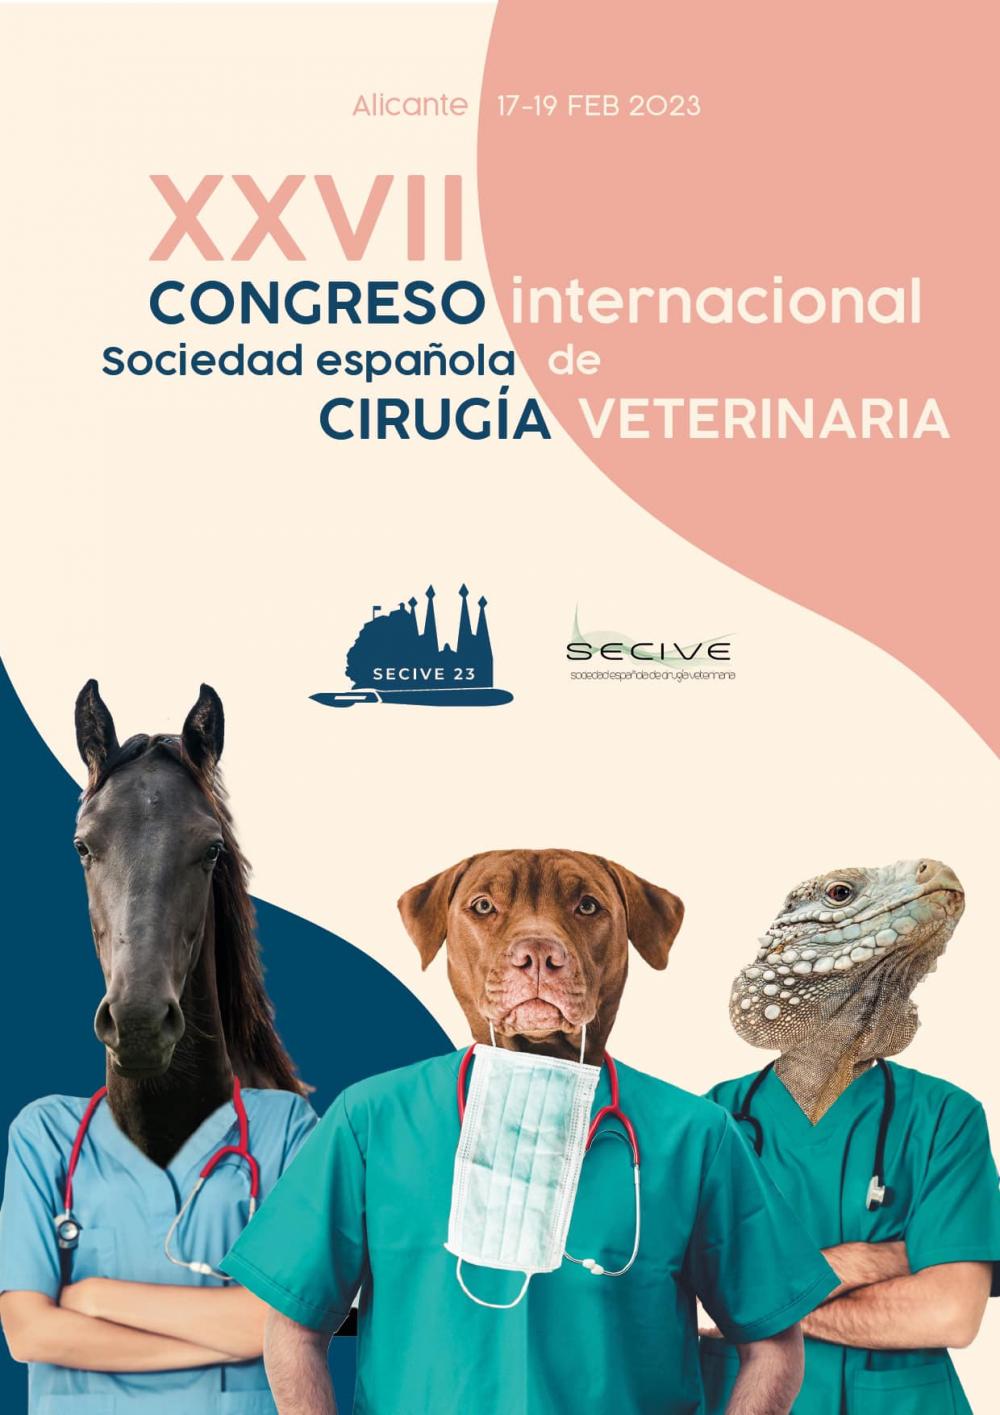 XXVII Congreso Sociedad Española de Cirugía Veterinaria